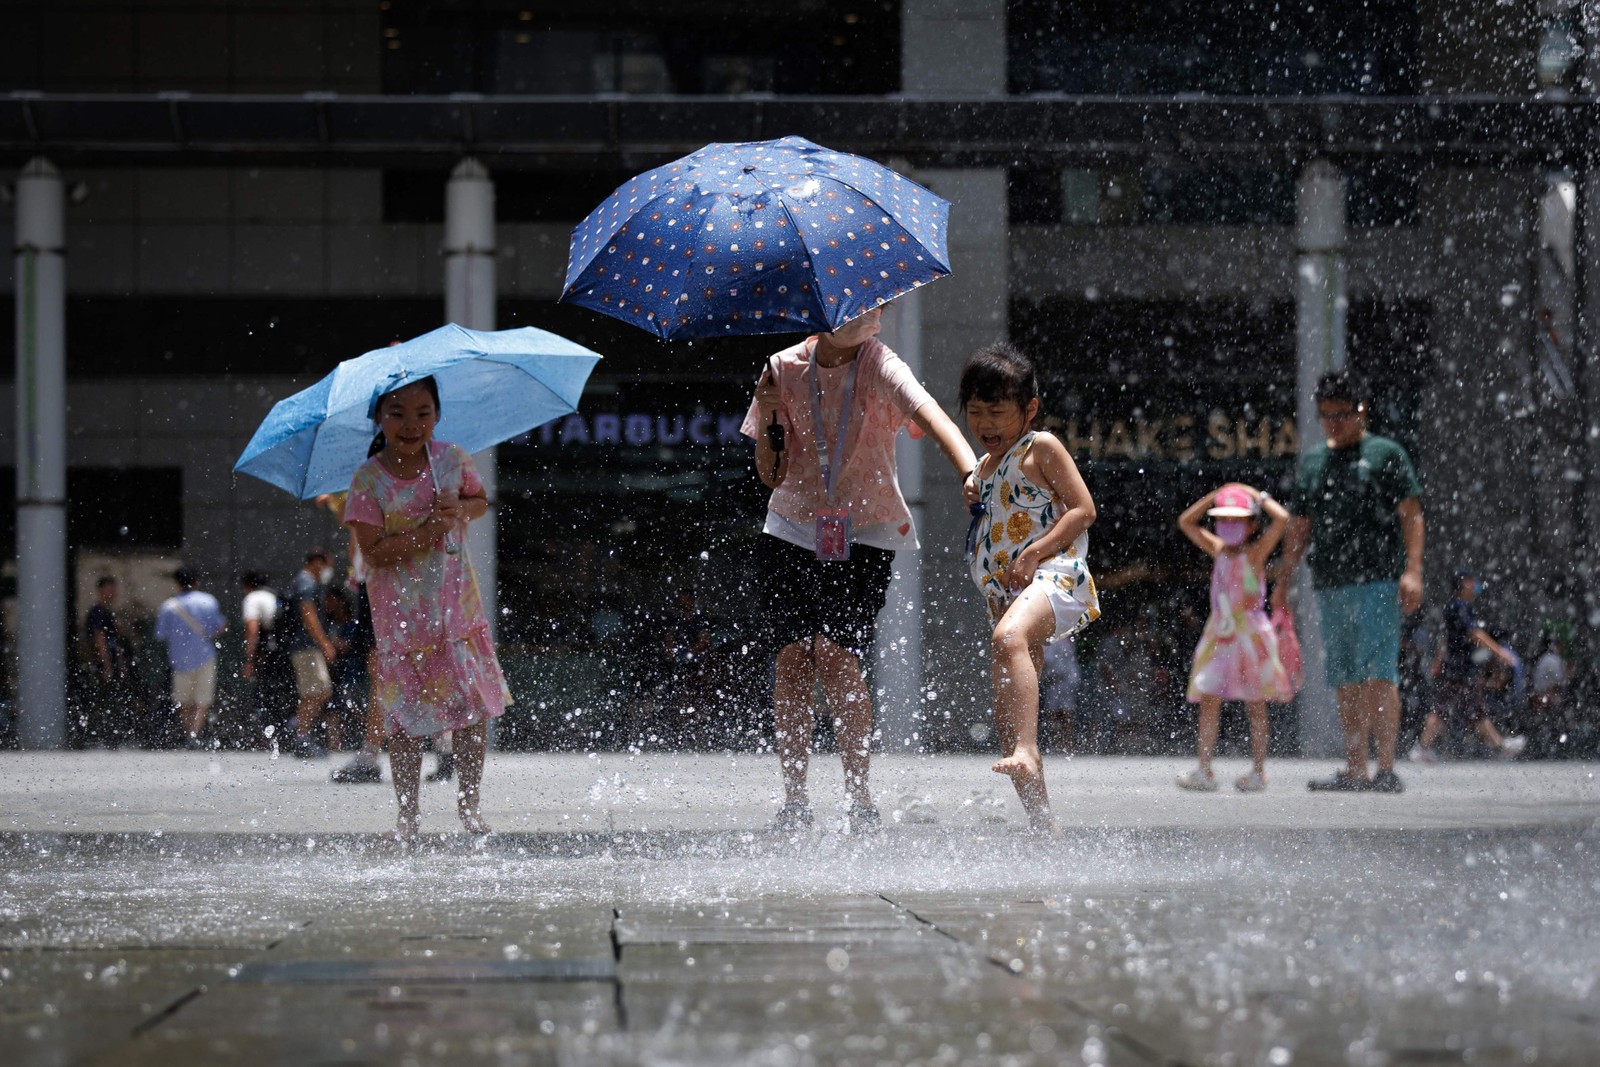 Crianças se refrescam em uma fonte de água durante uma onda de calor em Hong Kong — Foto: May JAMES / AFP